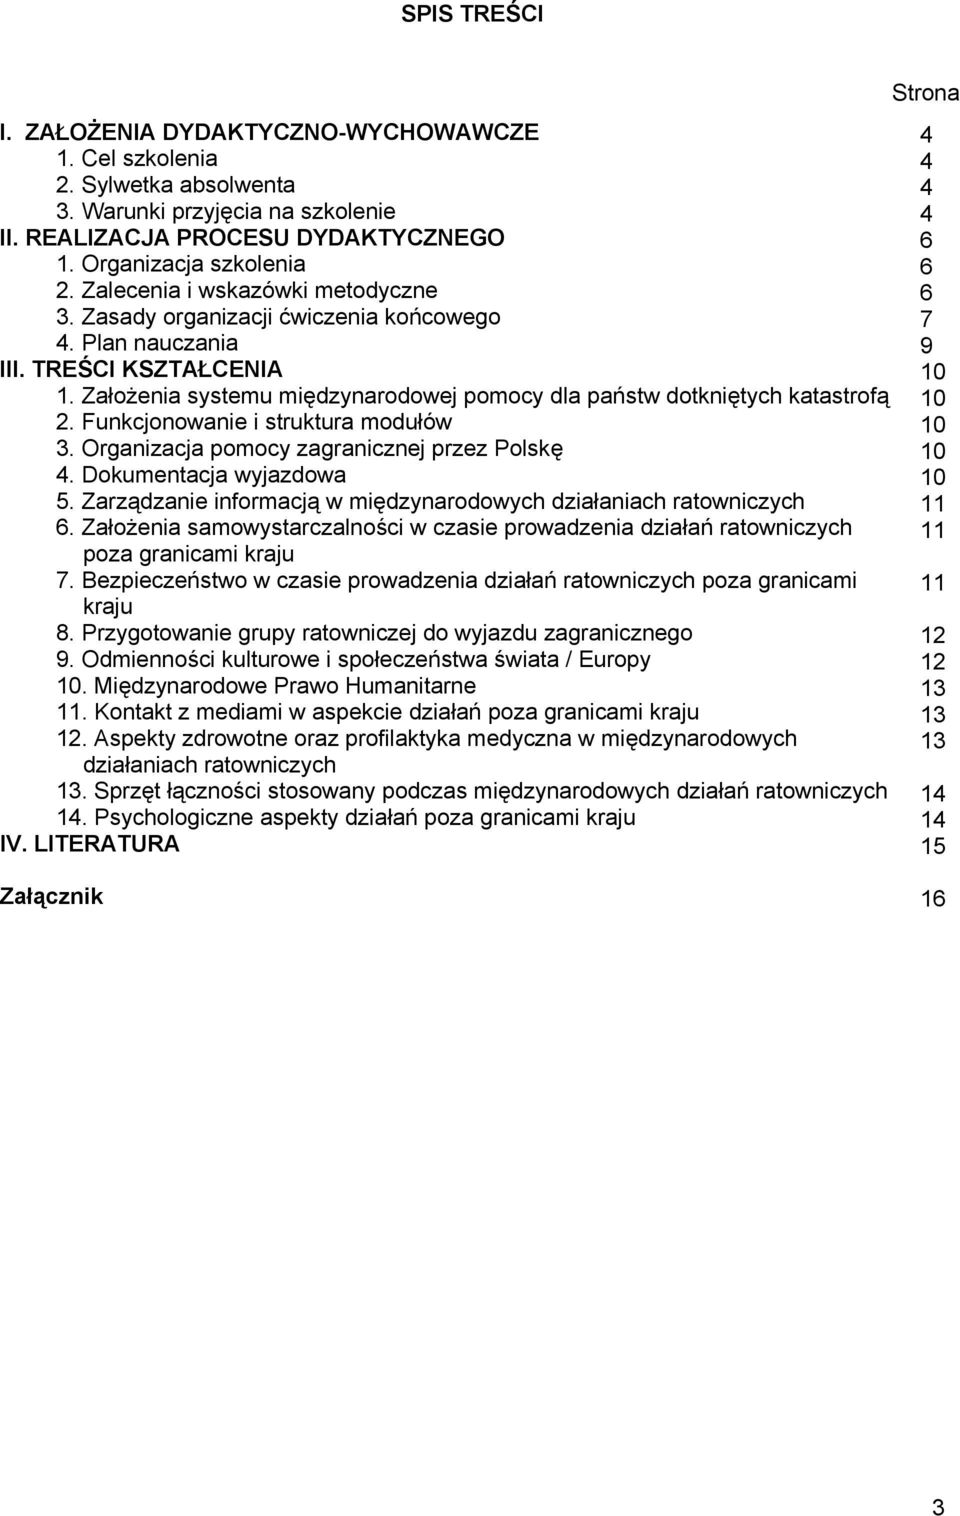 Funkcjonowanie i struktura modułów 3. Organizacja pomocy zagranicznej przez Polskę 4. Dokumentacja wyjazdowa 5. Zarządzanie informacją w międzynarodowych działaniach ratowniczych 6.